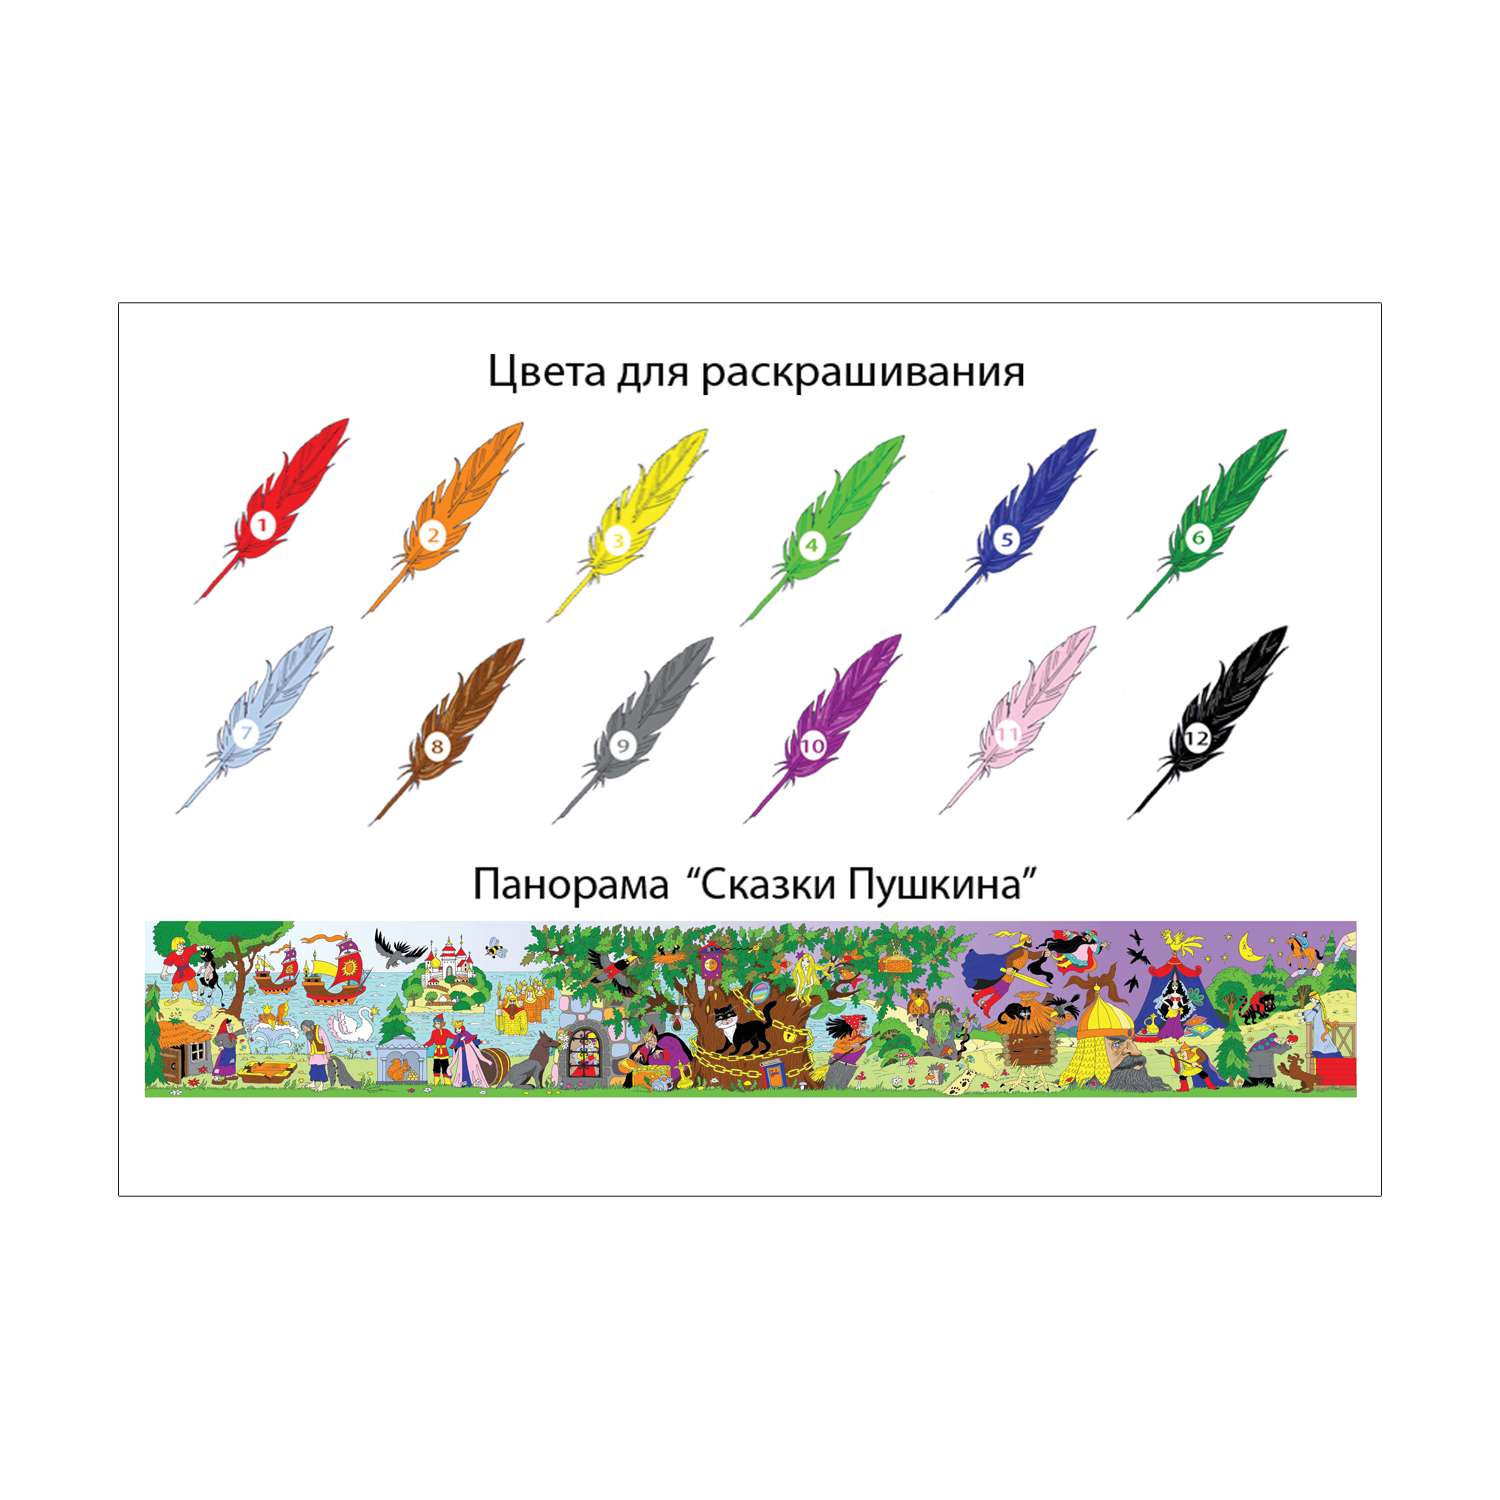 Раскраска большая Шпаргалки для мамы Сказки Пушкина - панорама для малышей 30 х 200 см - фото 3